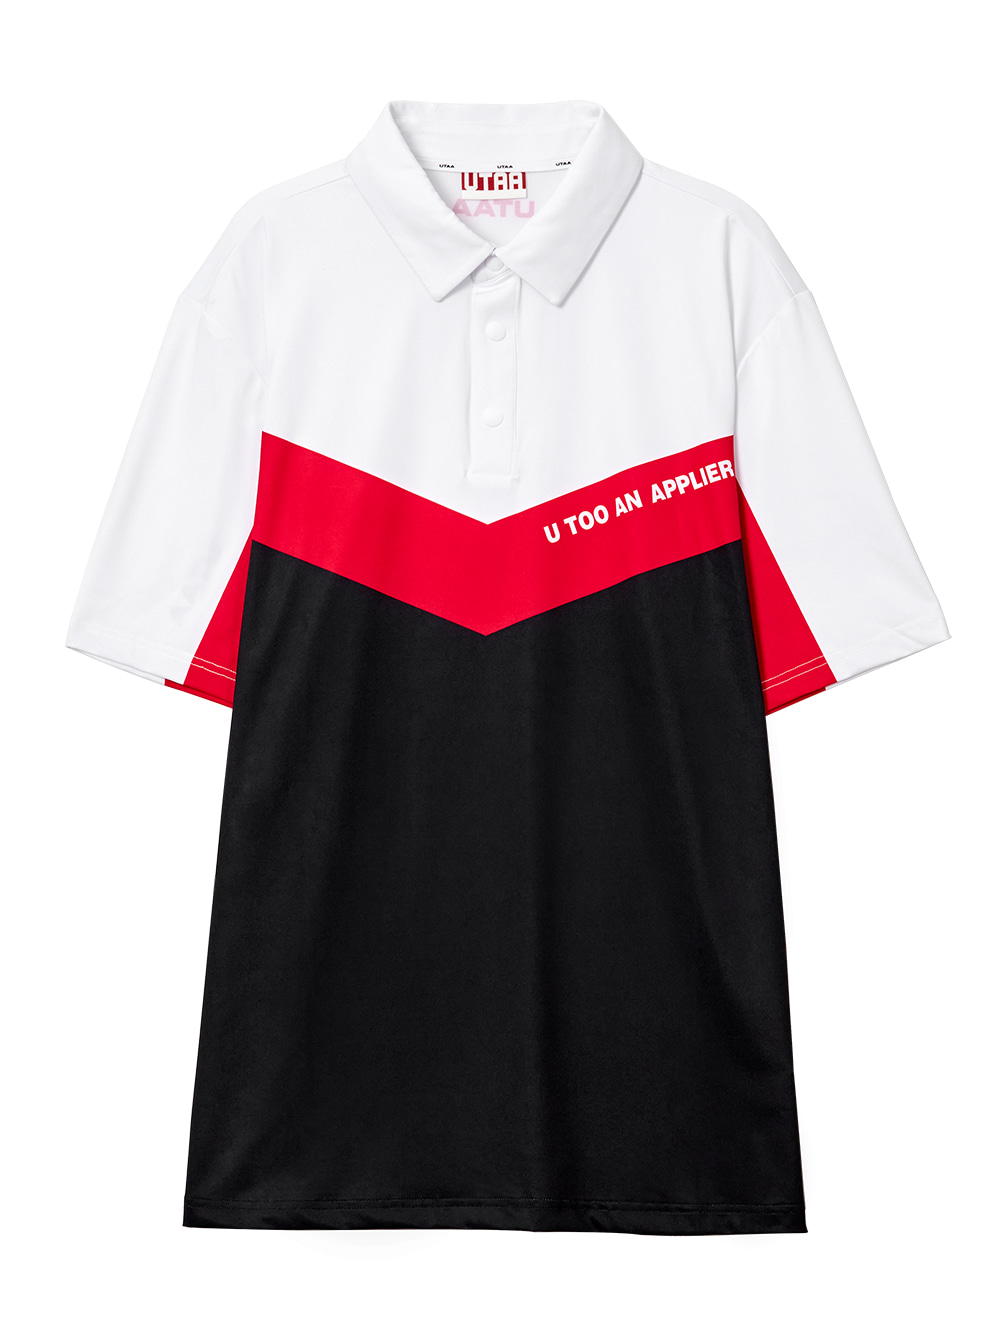 UTAA Neo V Polo T-shirts : Mens  (UA2TSM401RD)